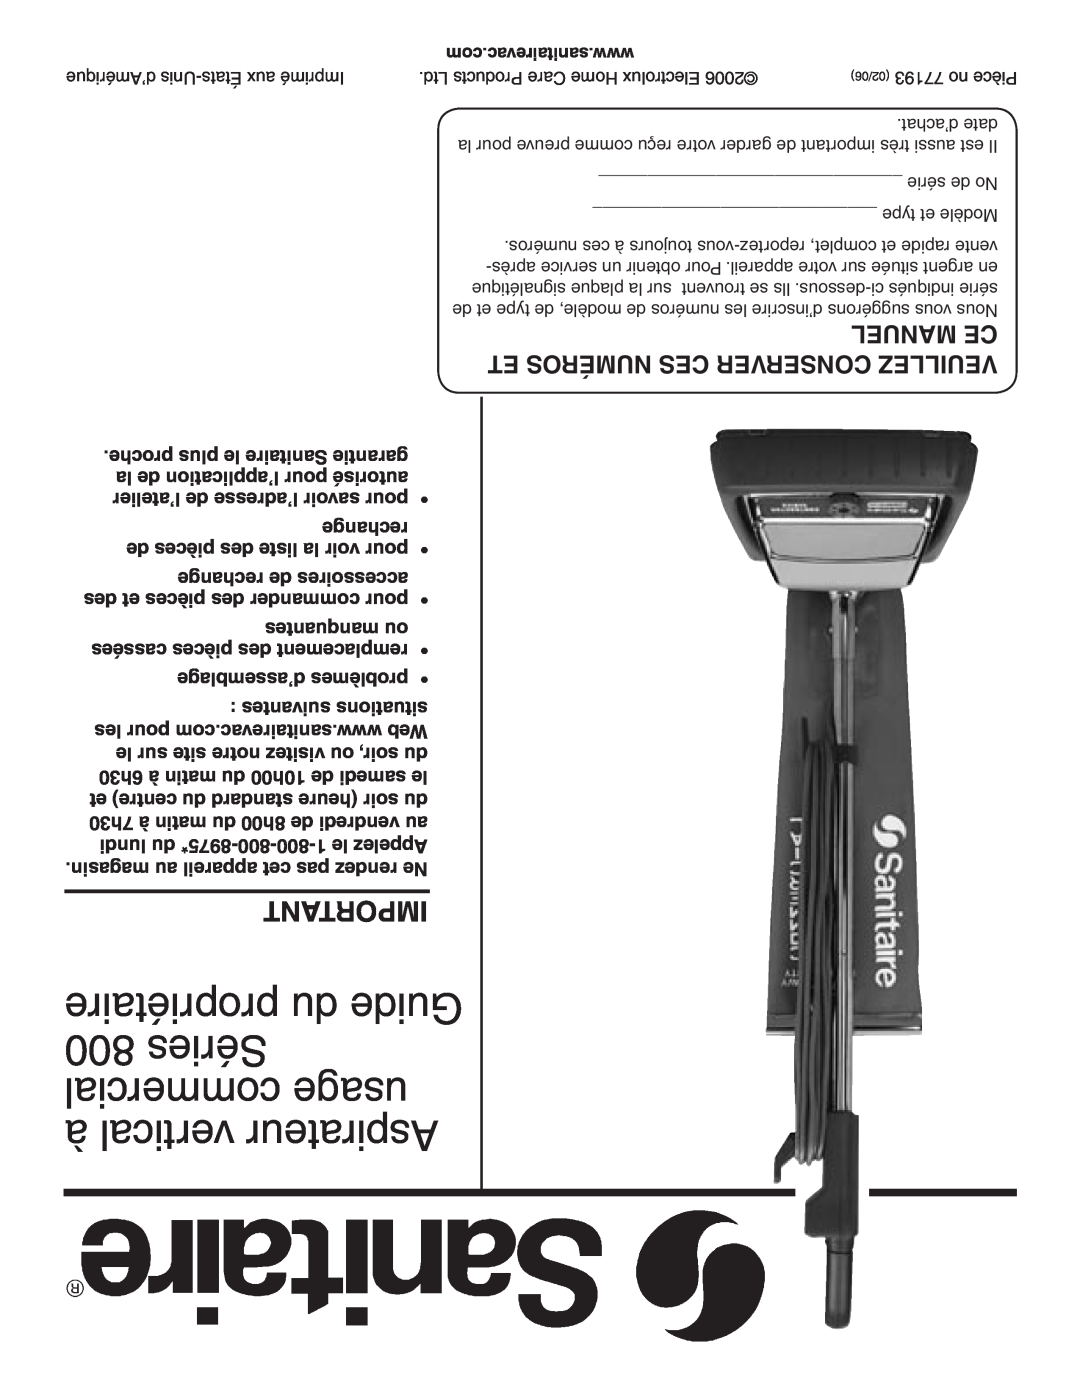 Sanitaire warranty 800Séries commercial usage à vertical Aspirateur, IMPORTANT propriétaire du Guide, Manuel Ce 